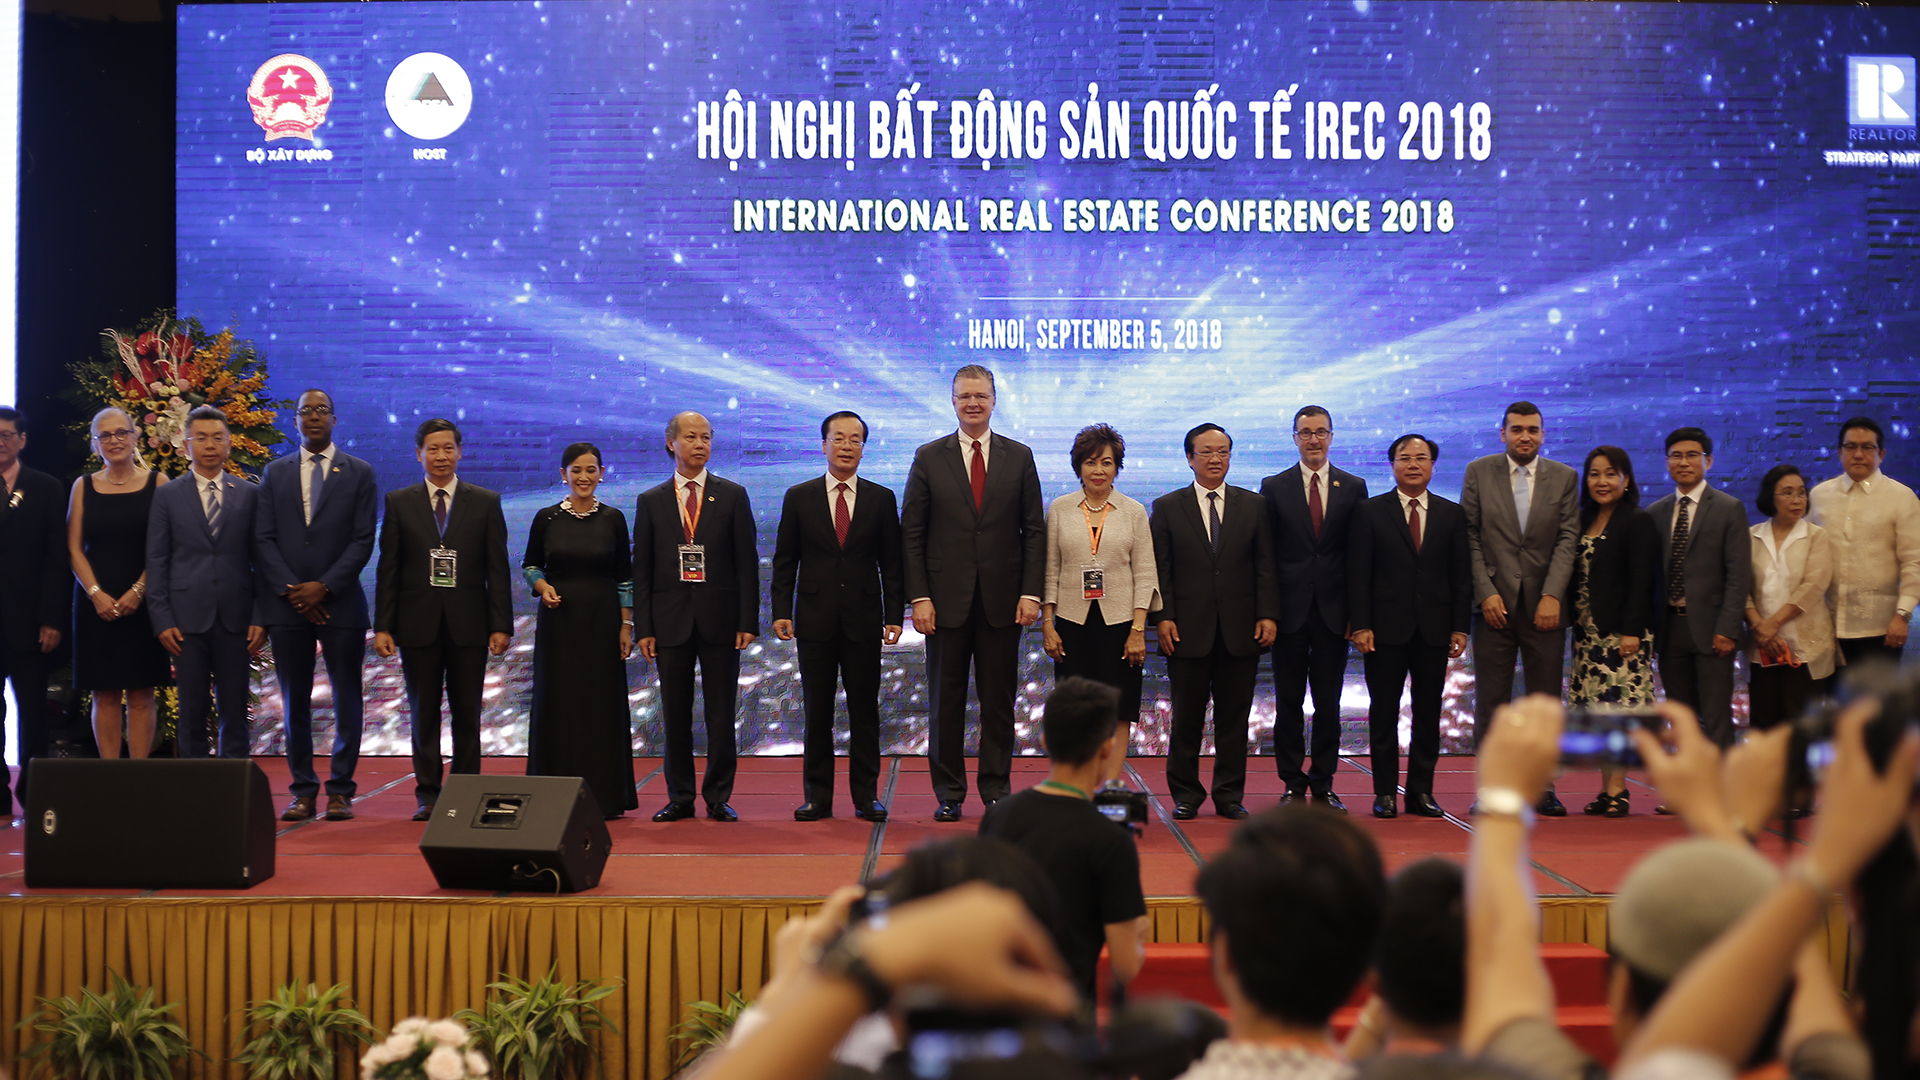 Hội nghị Bất động sản quốc tế IREC 2018 [ANH PHƯƠNG MEDIA]